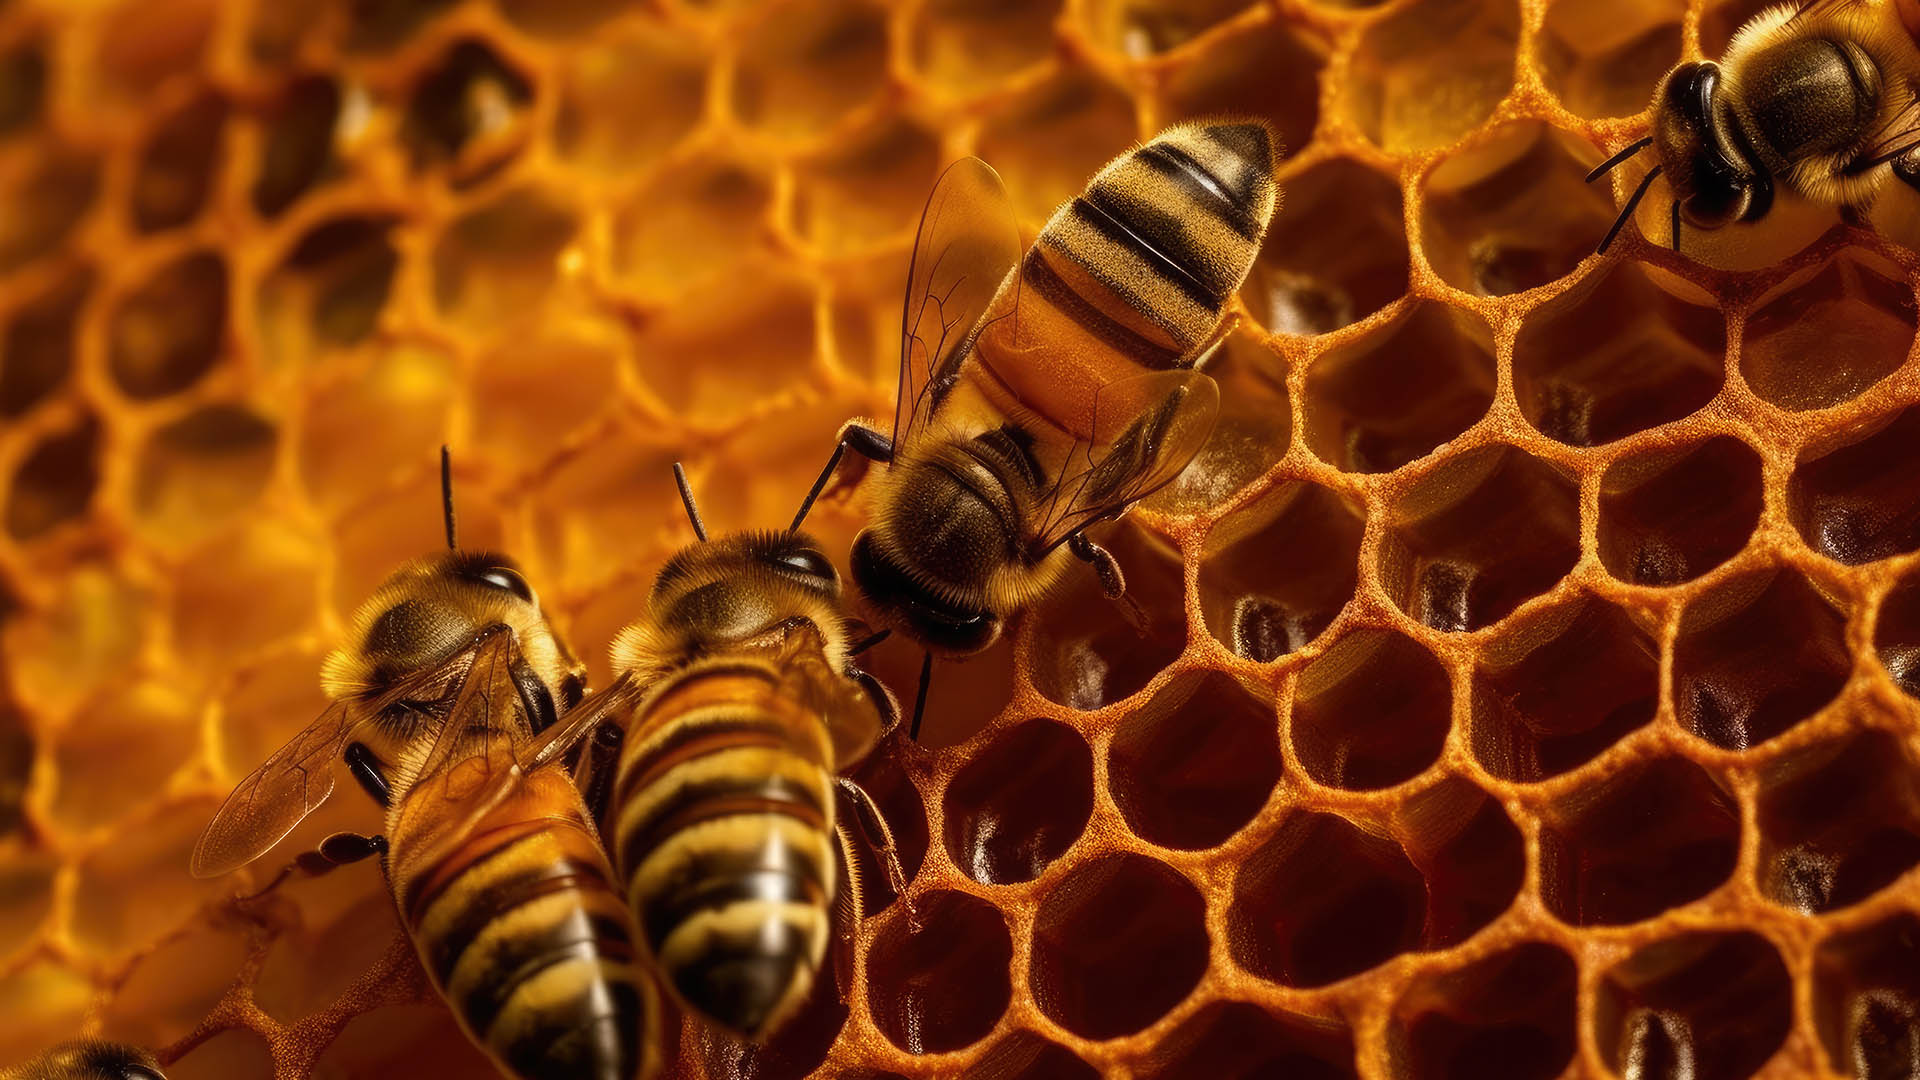 la classica struttura alveolare dell 'alveare, con le celle in cui le api depositano il nettare che diventer miele